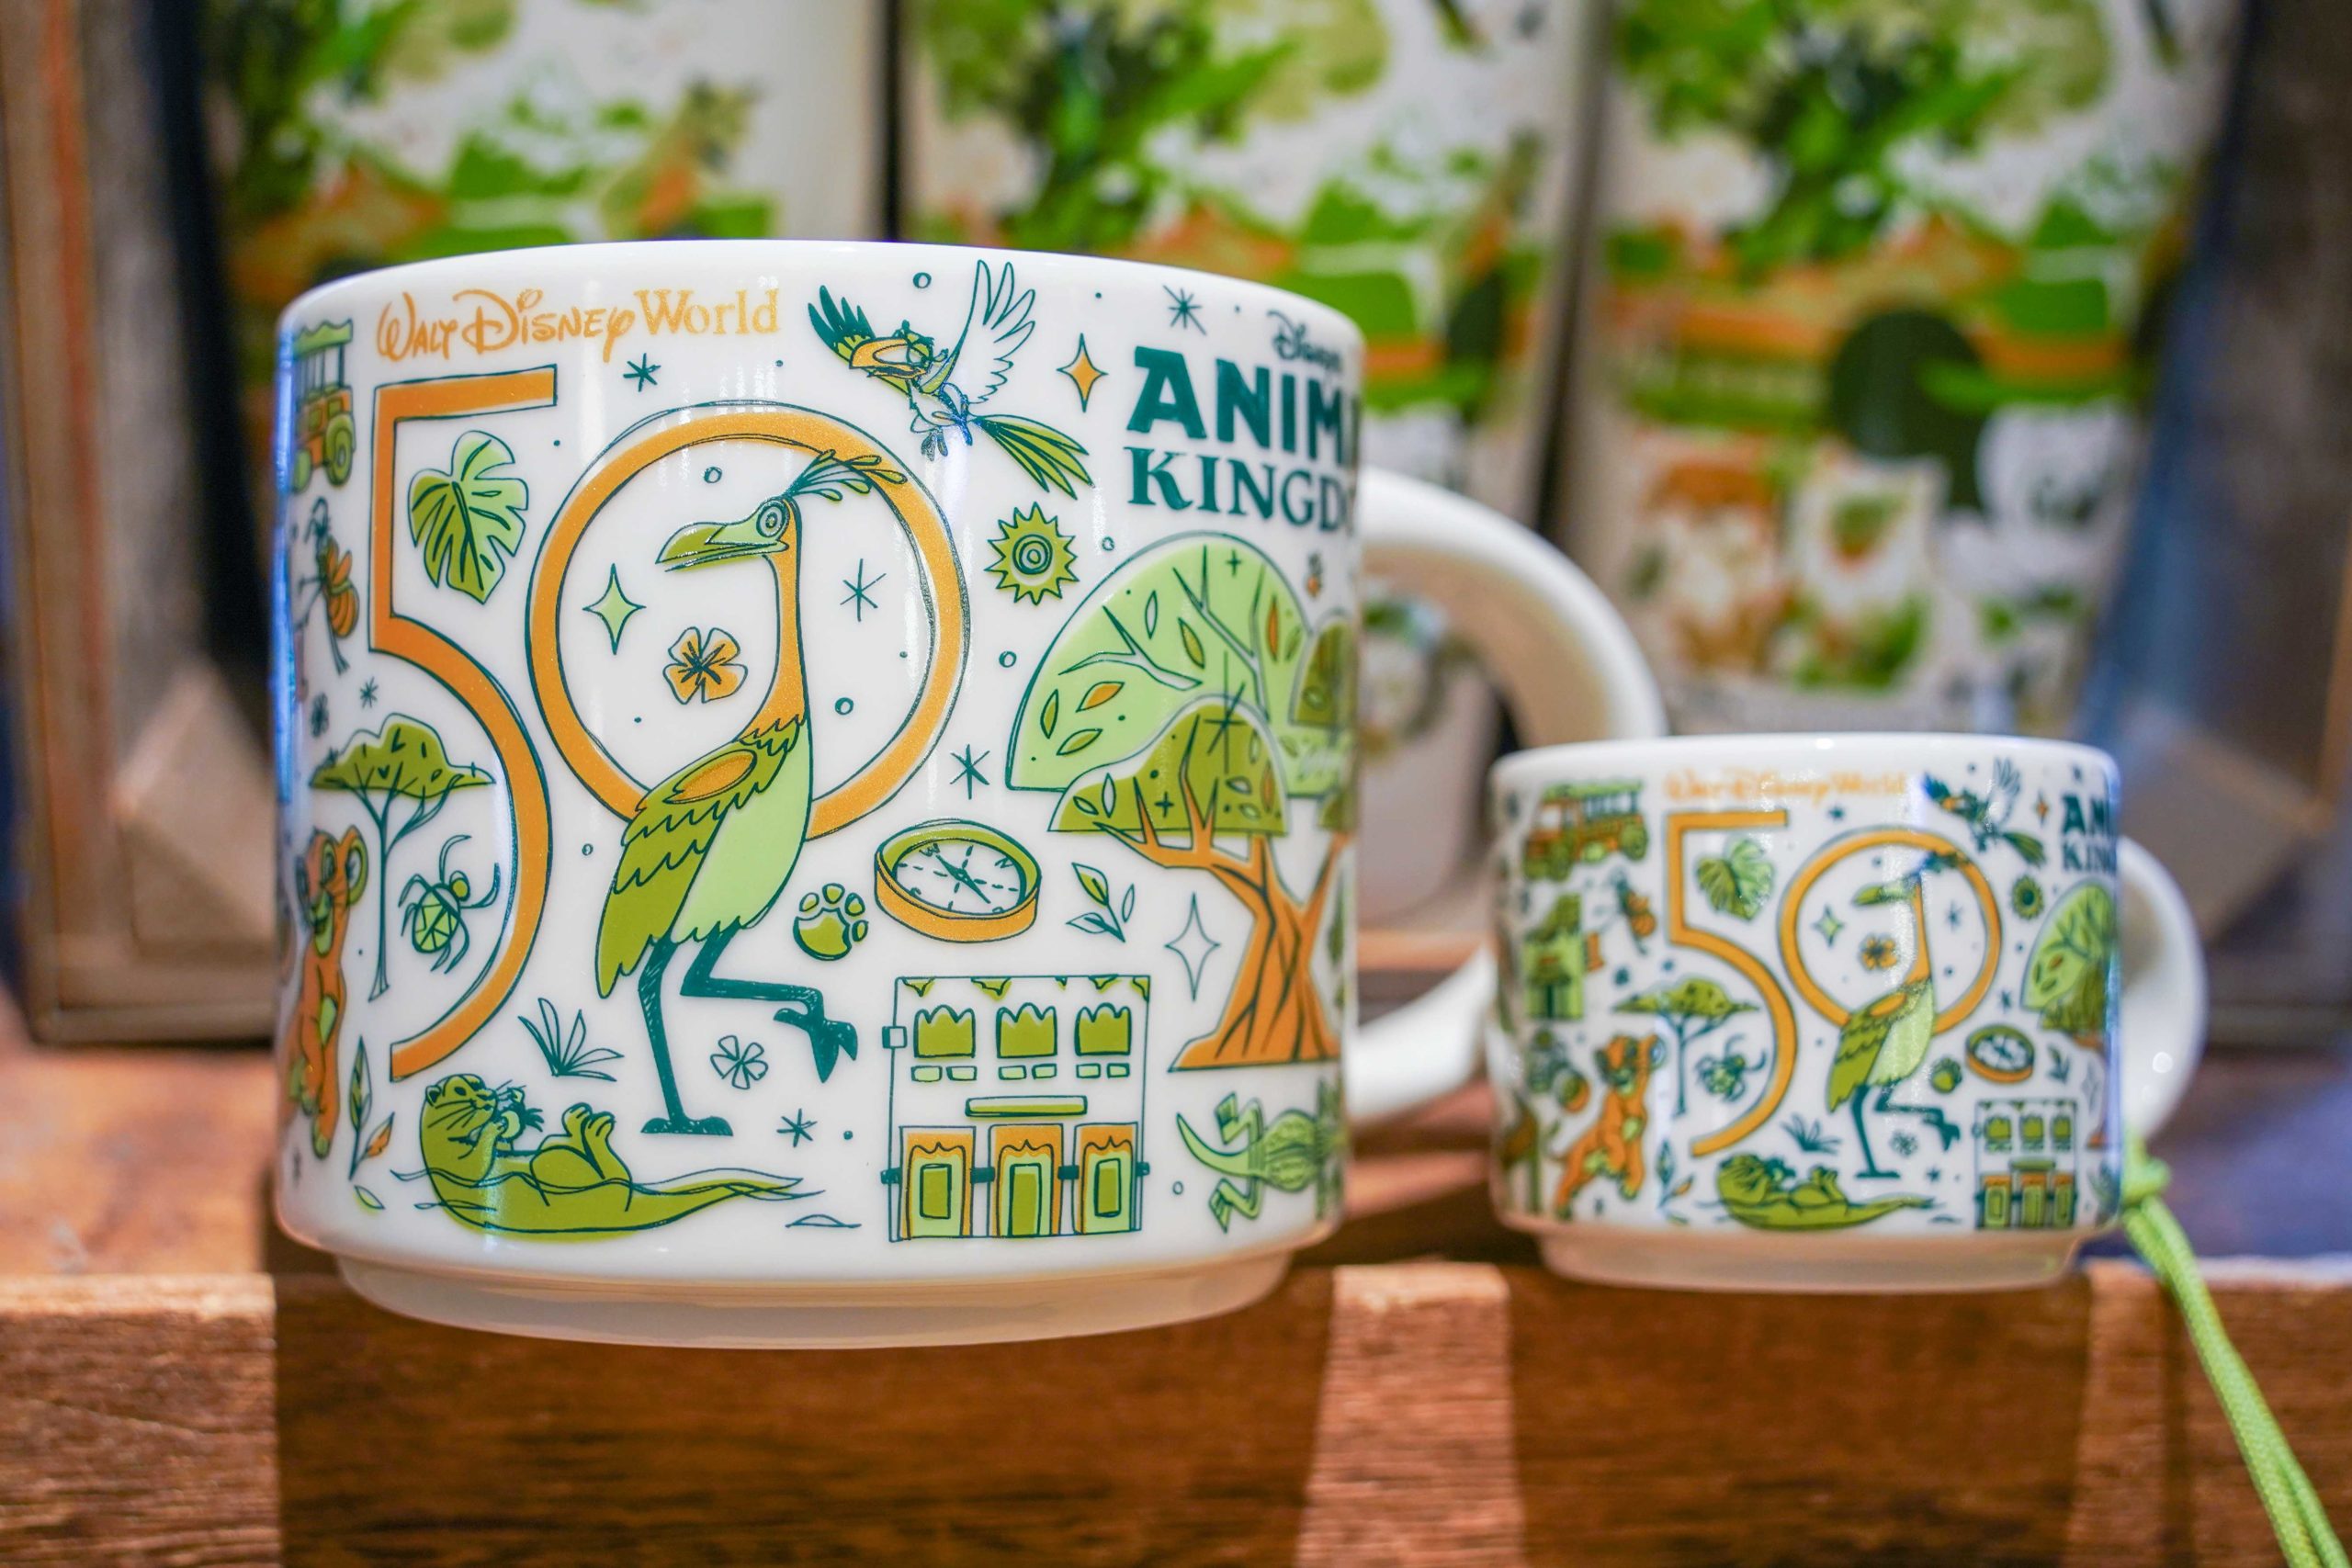 PHOTOS: New Starbucks 'Been There Series' Animal Kingdom Mug and 